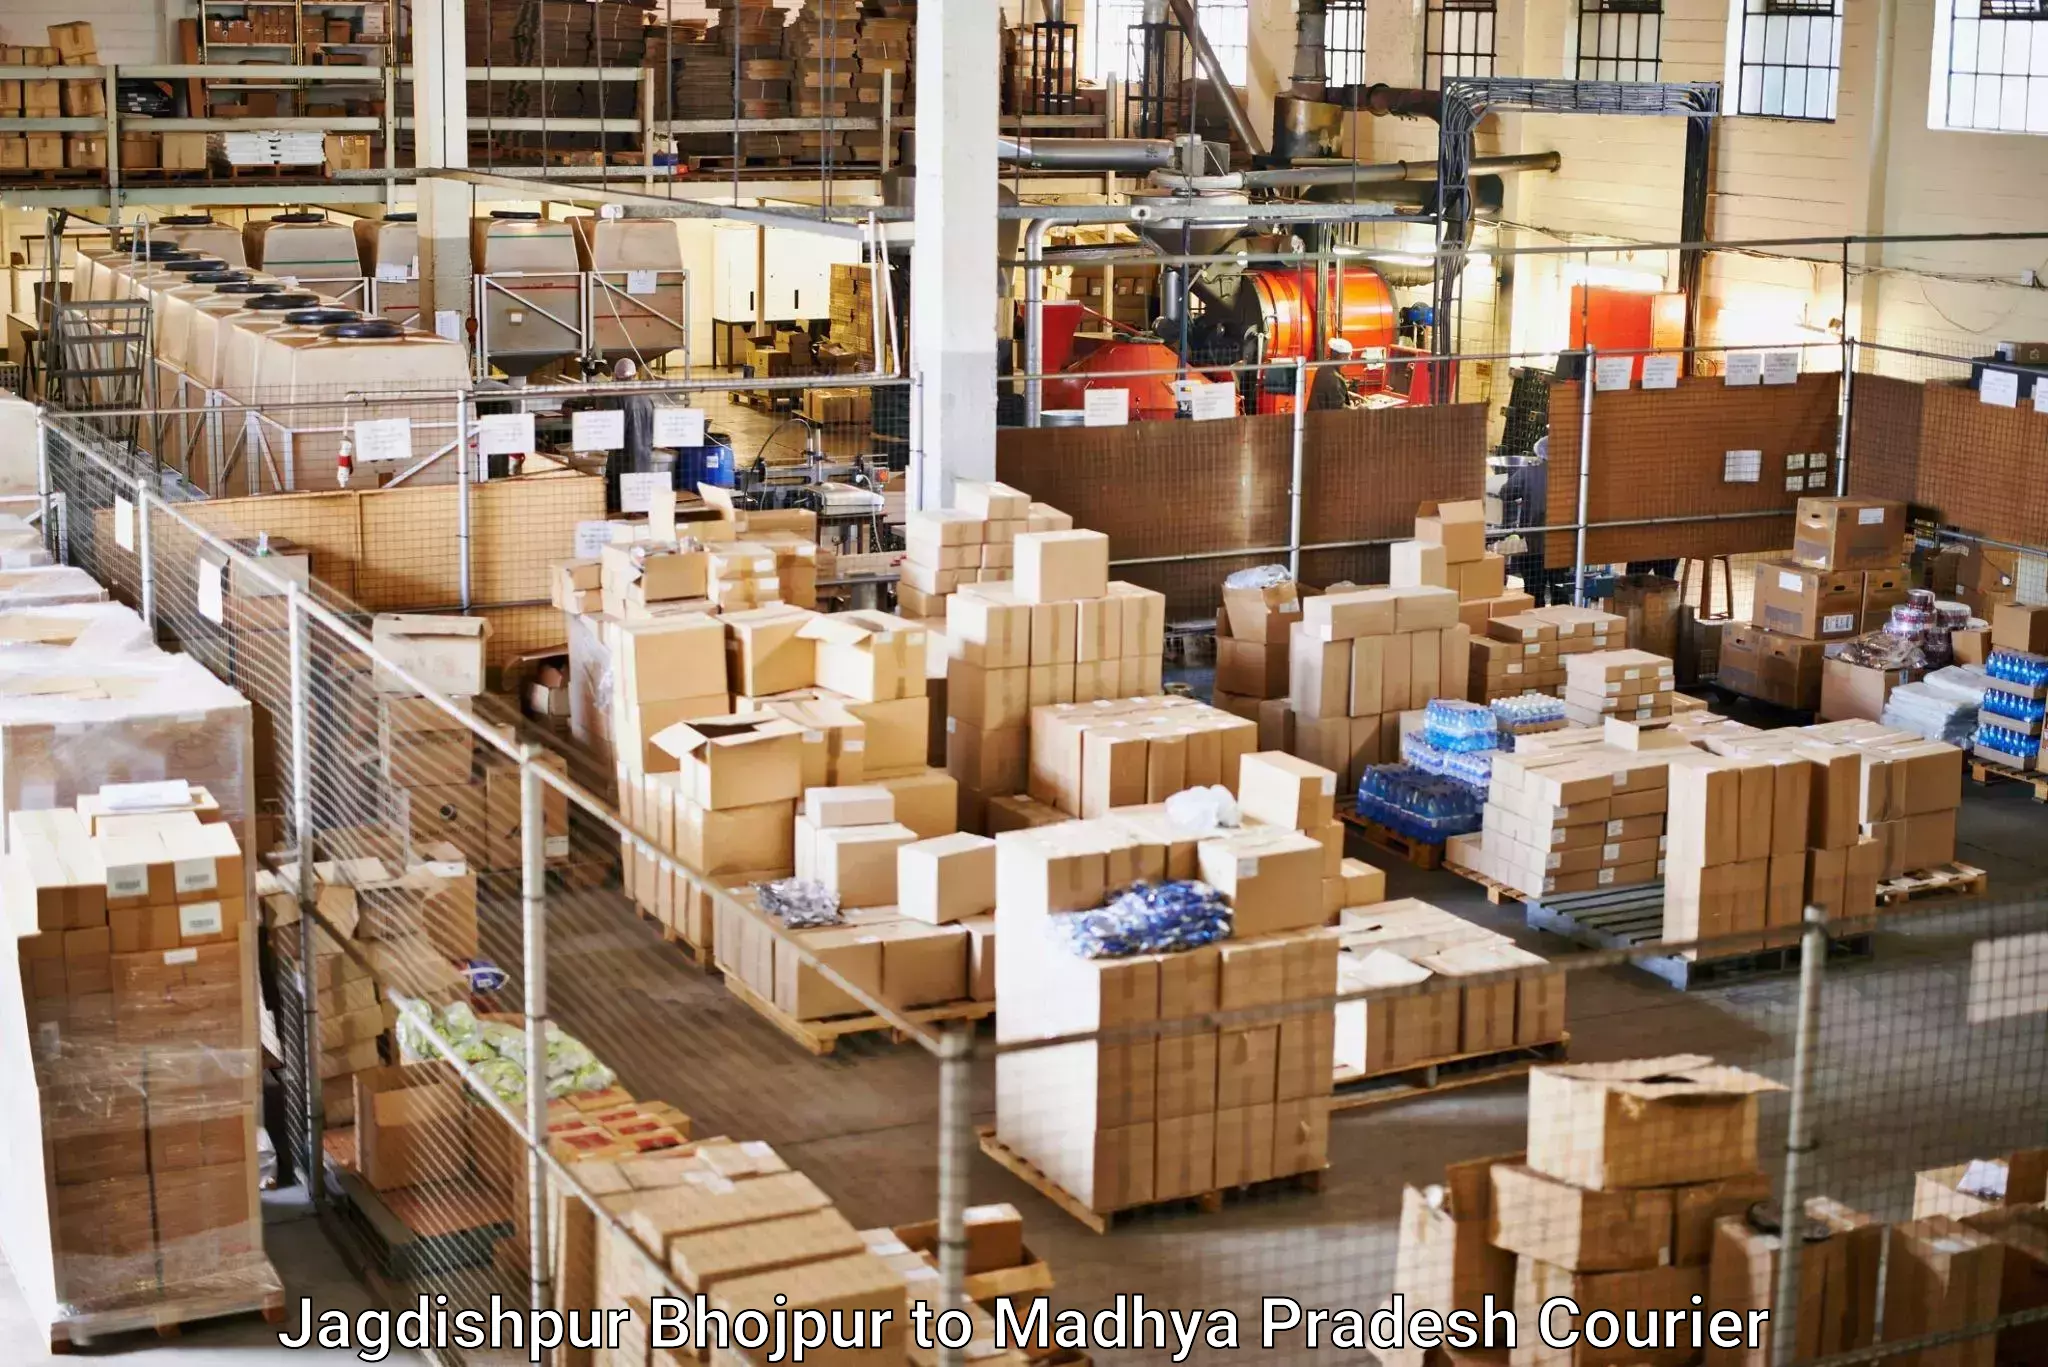 High-performance logistics Jagdishpur Bhojpur to Madhya Pradesh